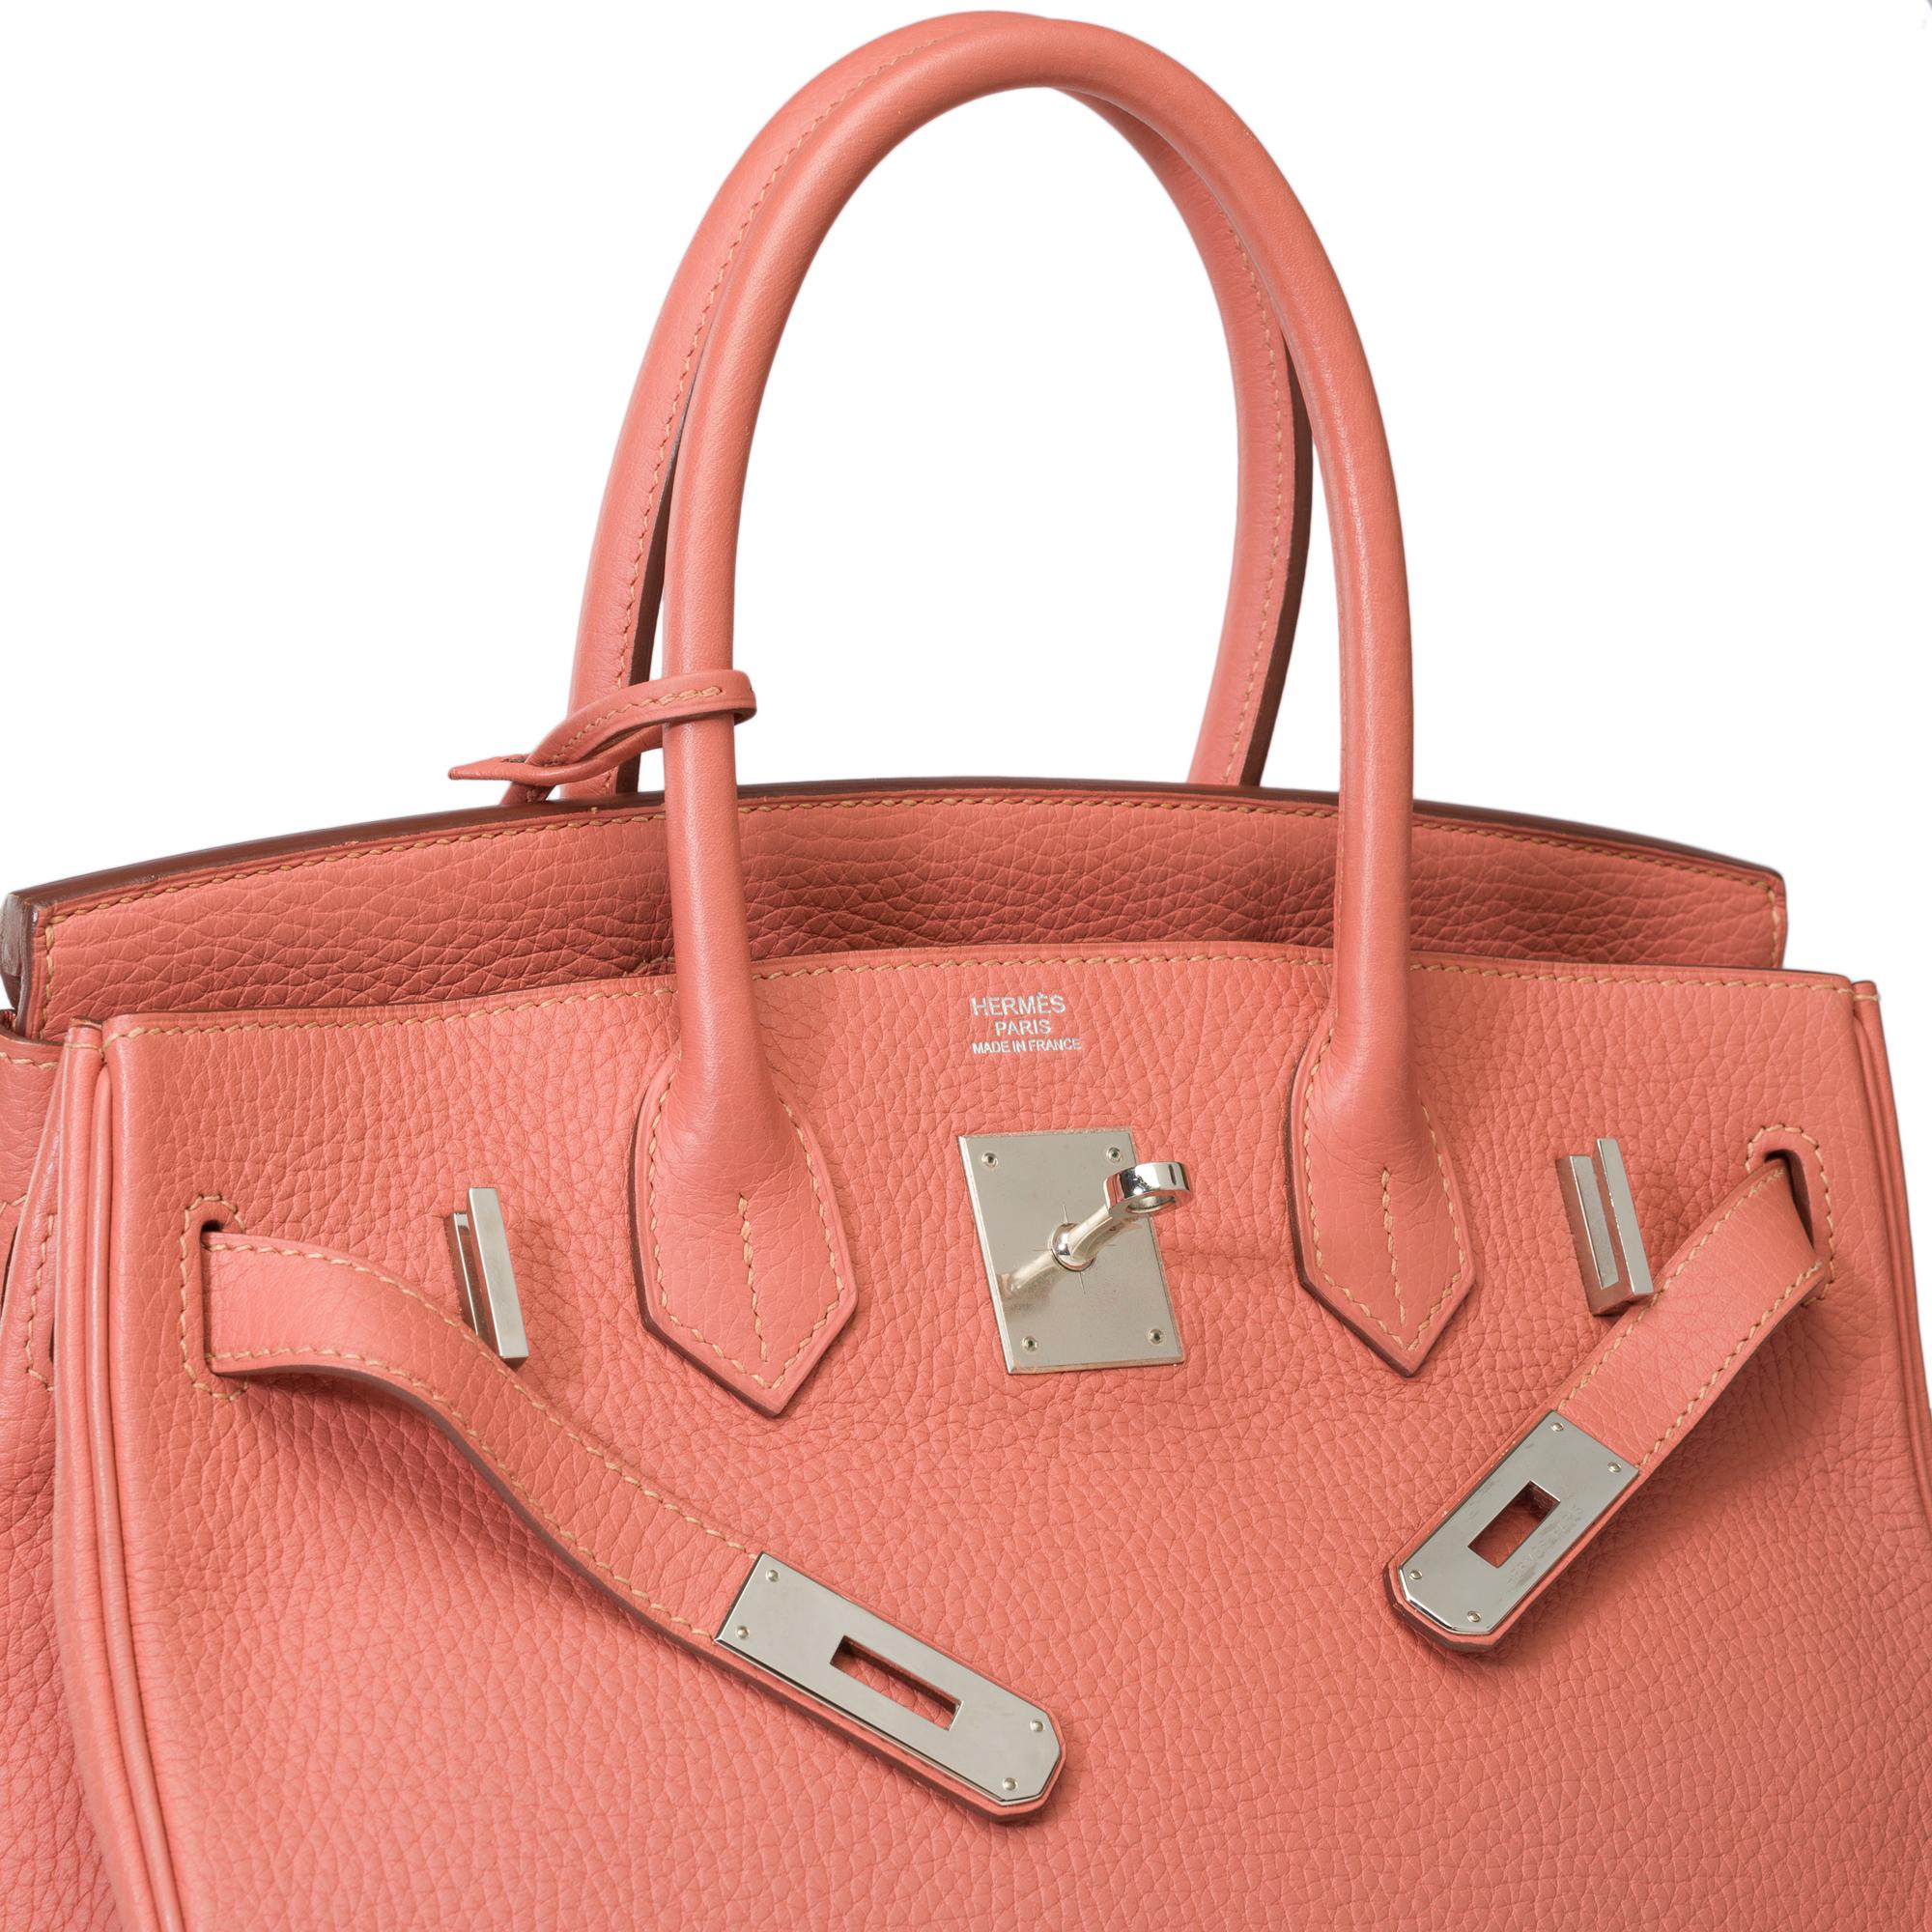 Stunning Hermes Birkin 30 handbag in Rose Tea Togo leather, SHW For Sale 2